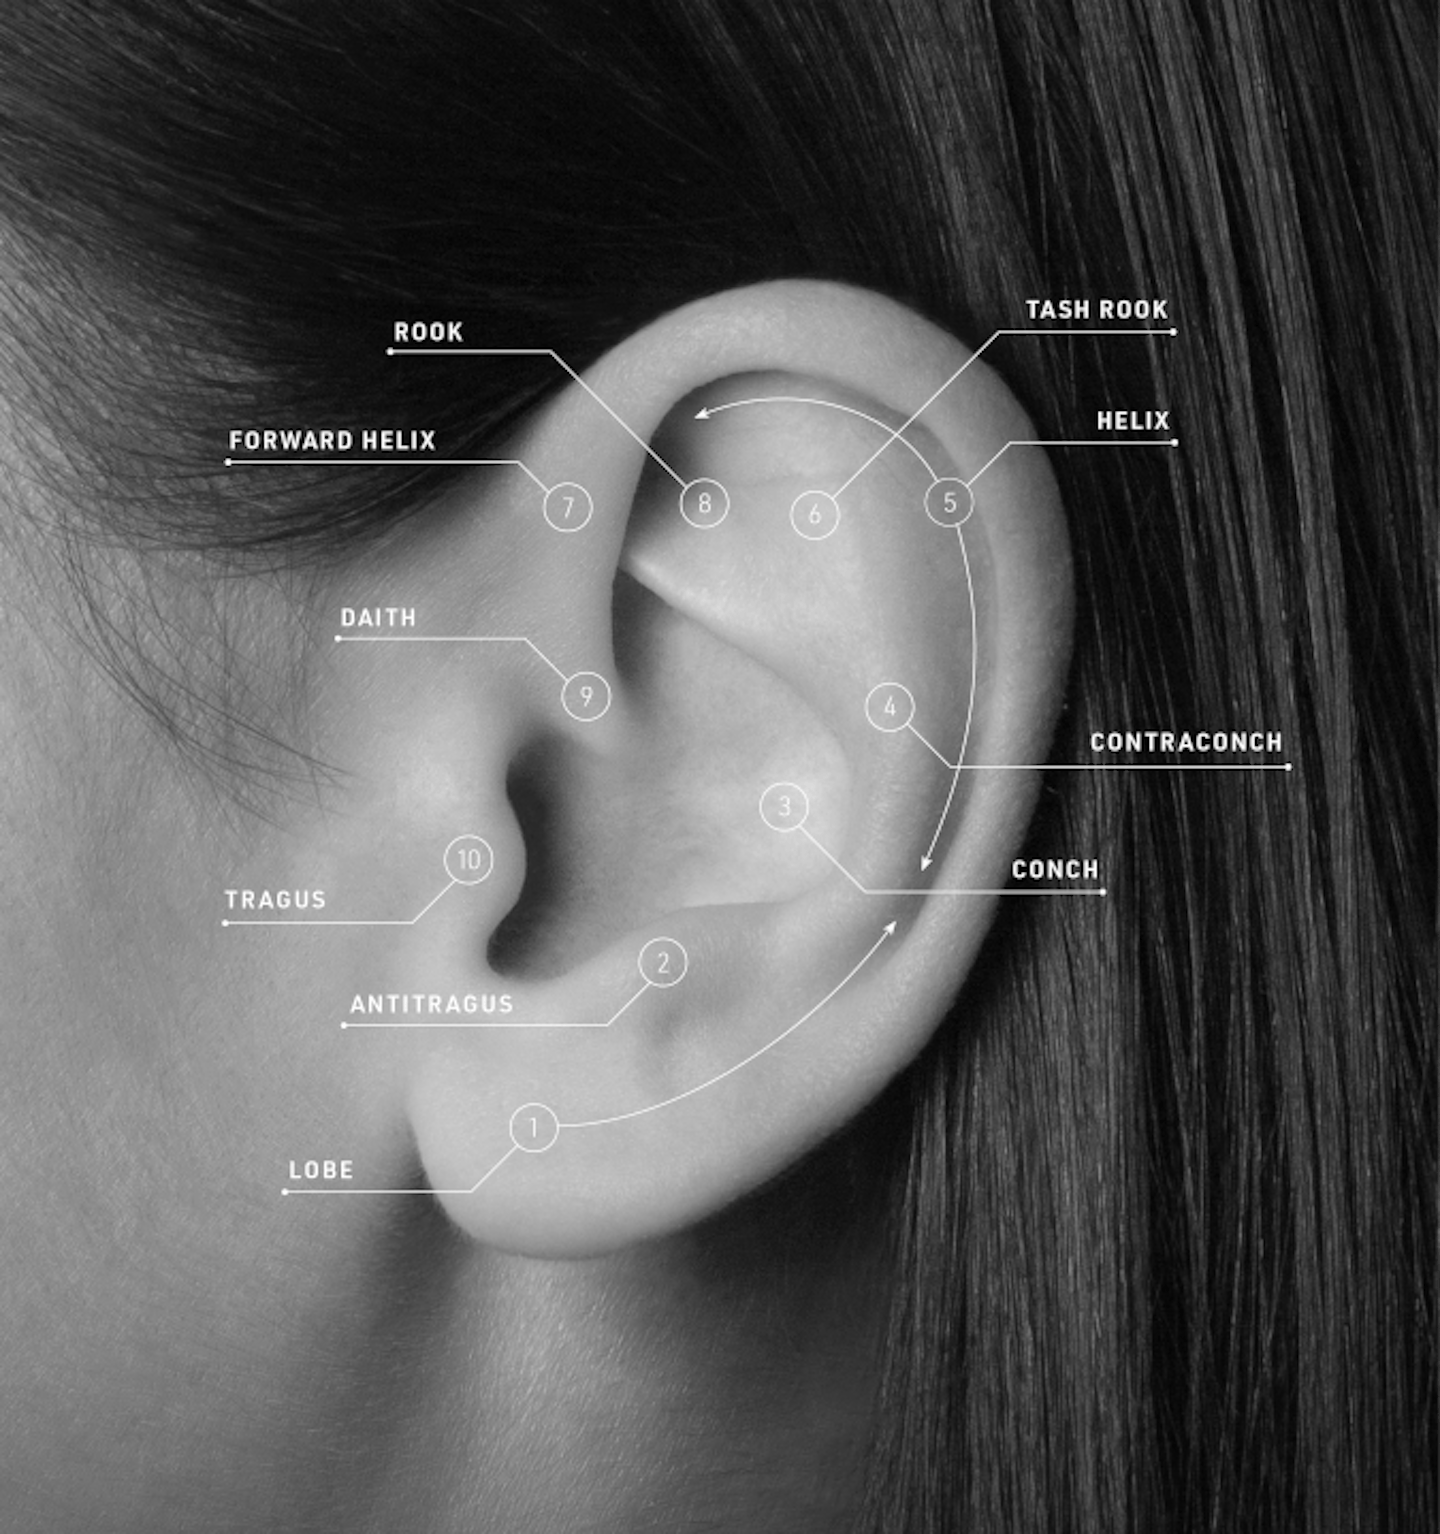 multiple ear piercings